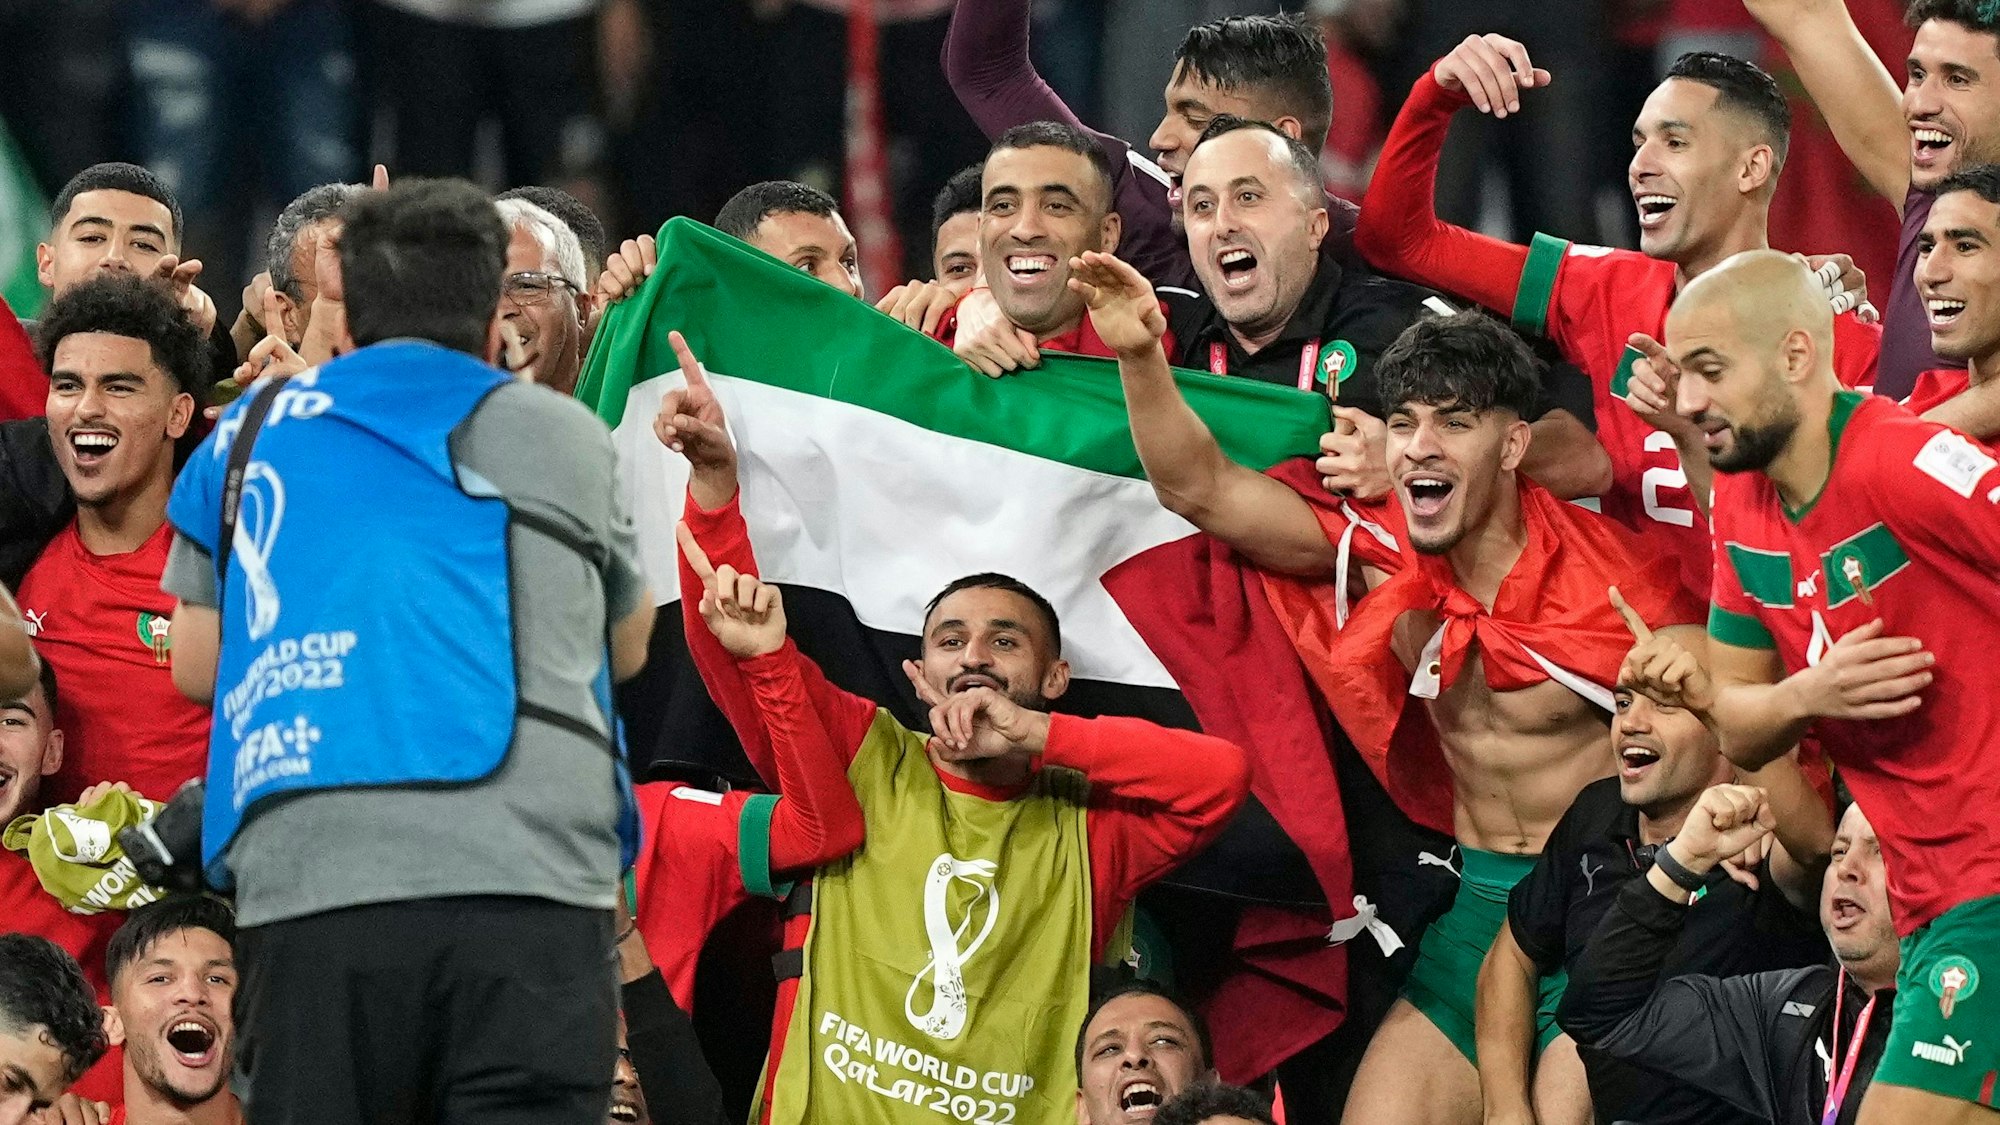 Marokkos Mannschaft posiert nach dem Sieg über Portugal für ein Gruppenfoto auf dem Spielfeld mit einer palästinensischen Flagge.